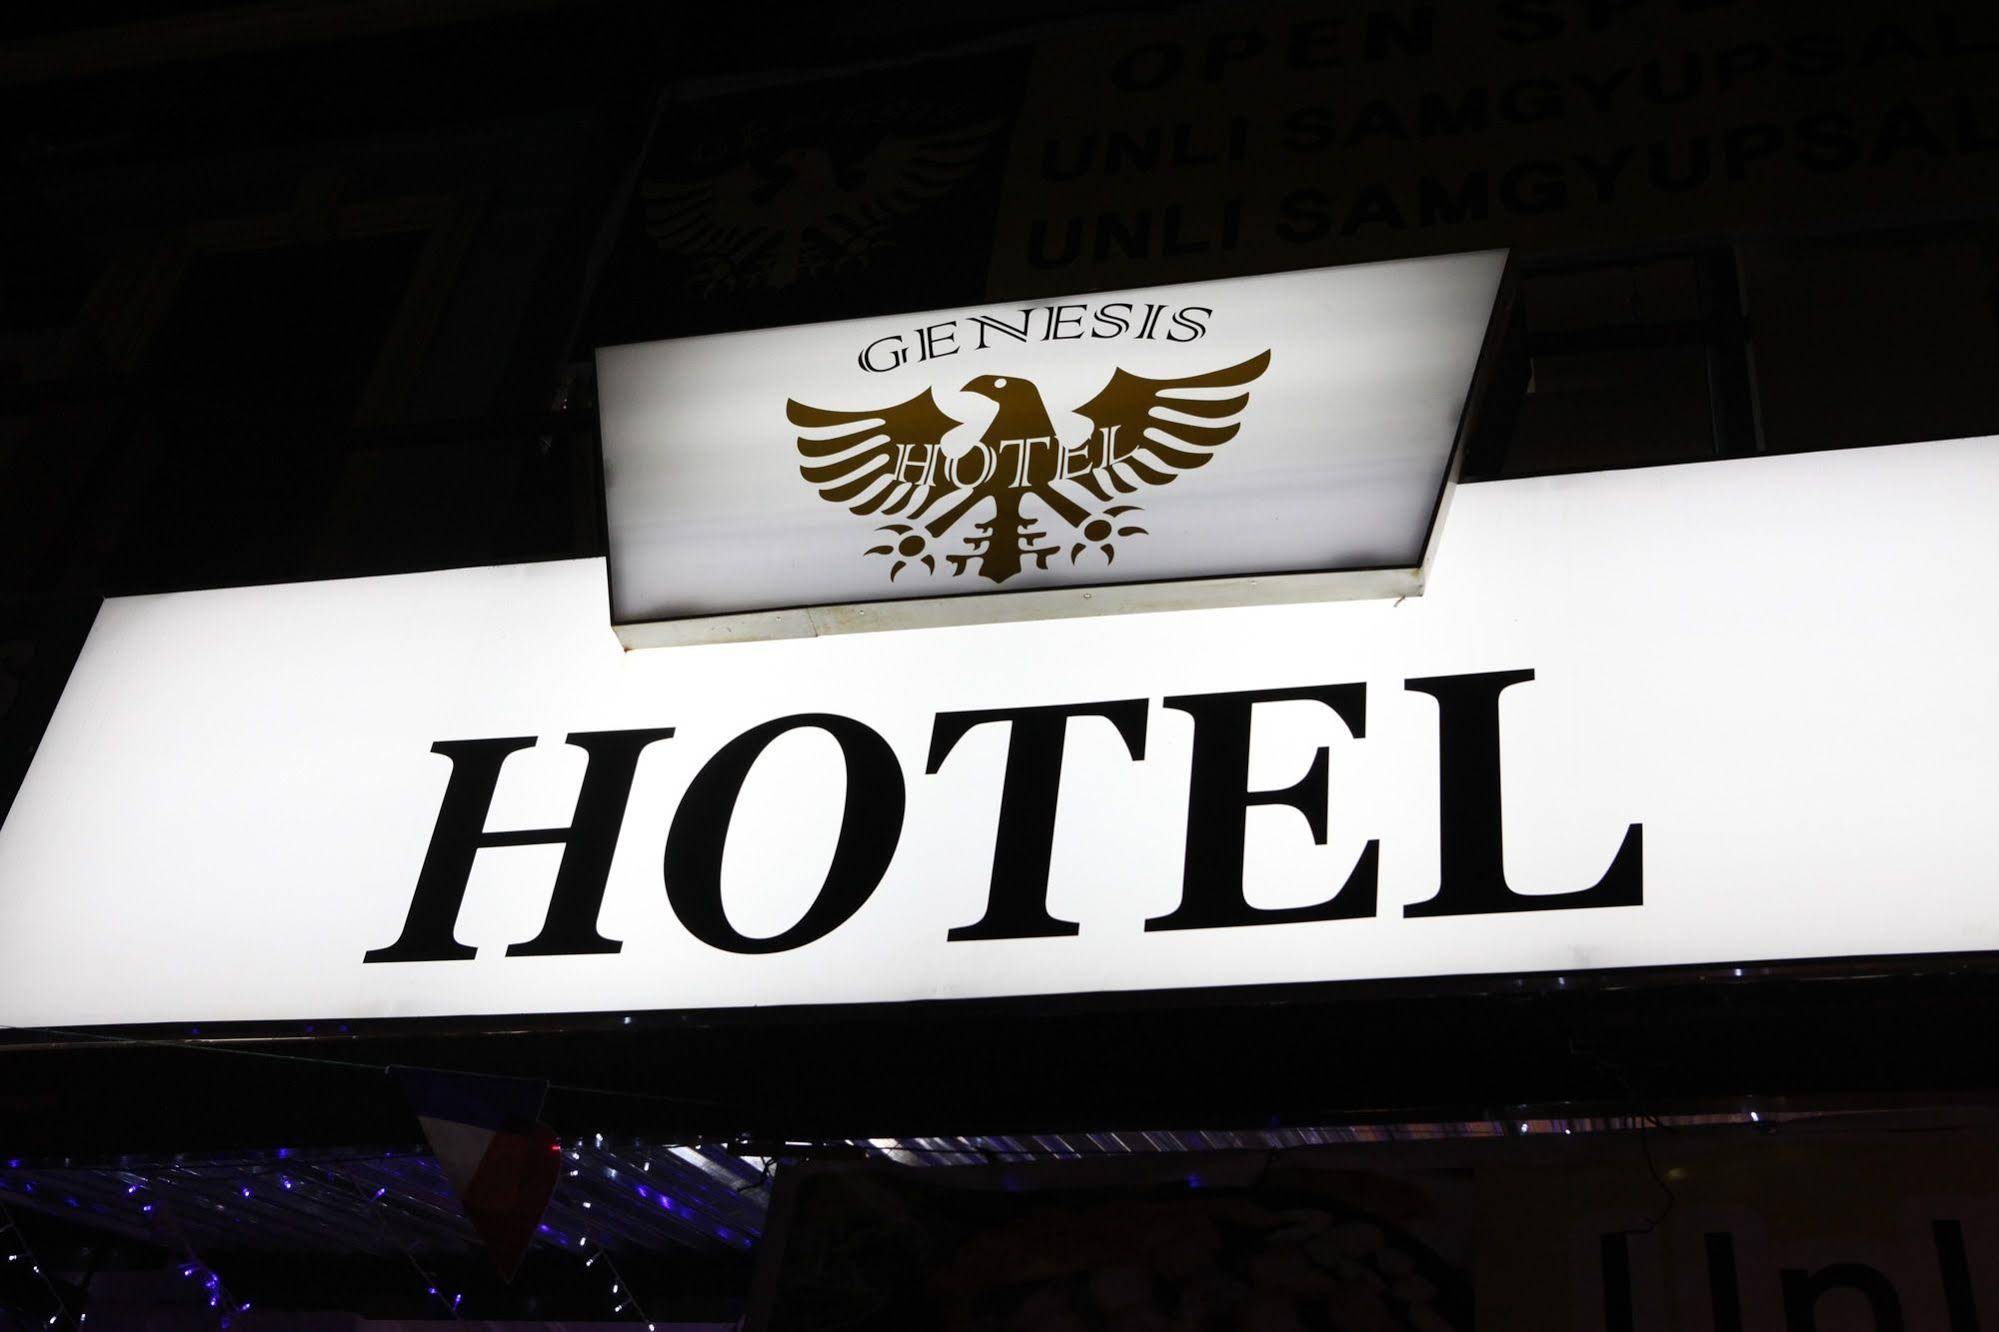 Genesis Hotel